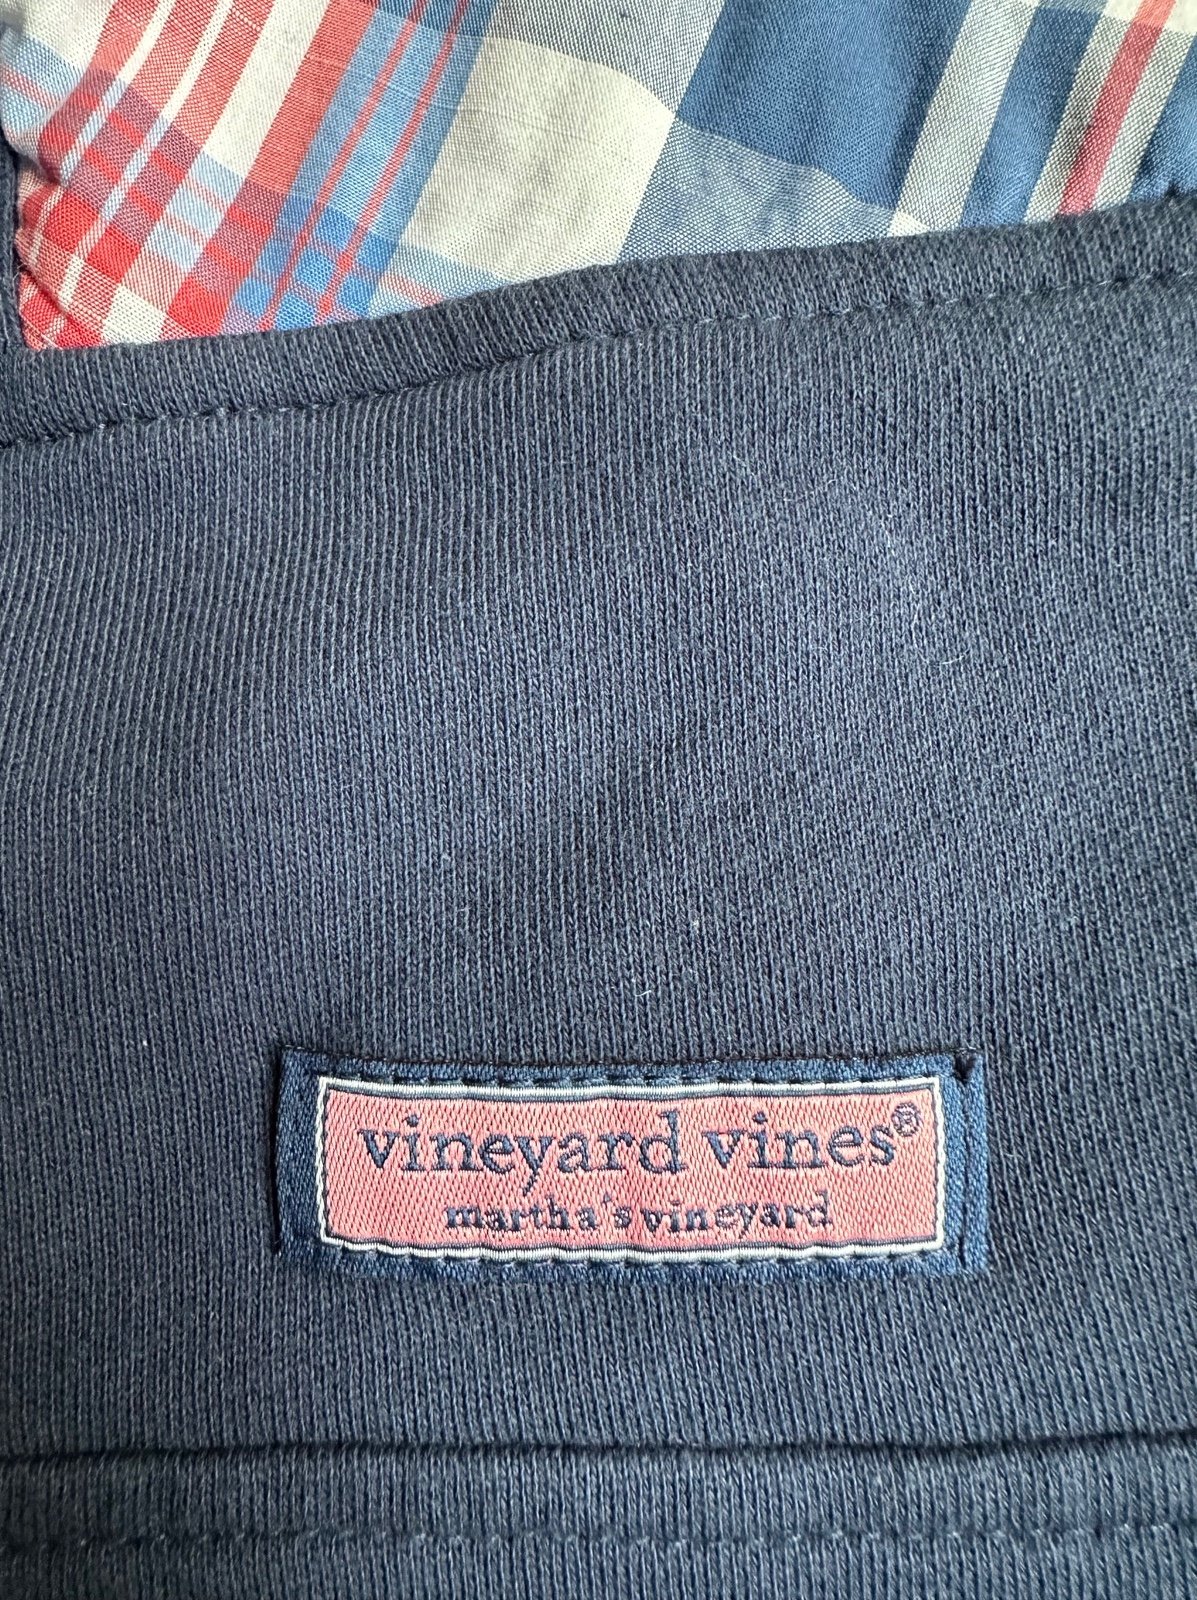 the Lowest price Vineyard vines 1/2 zip iWOw8zyoj Fashion